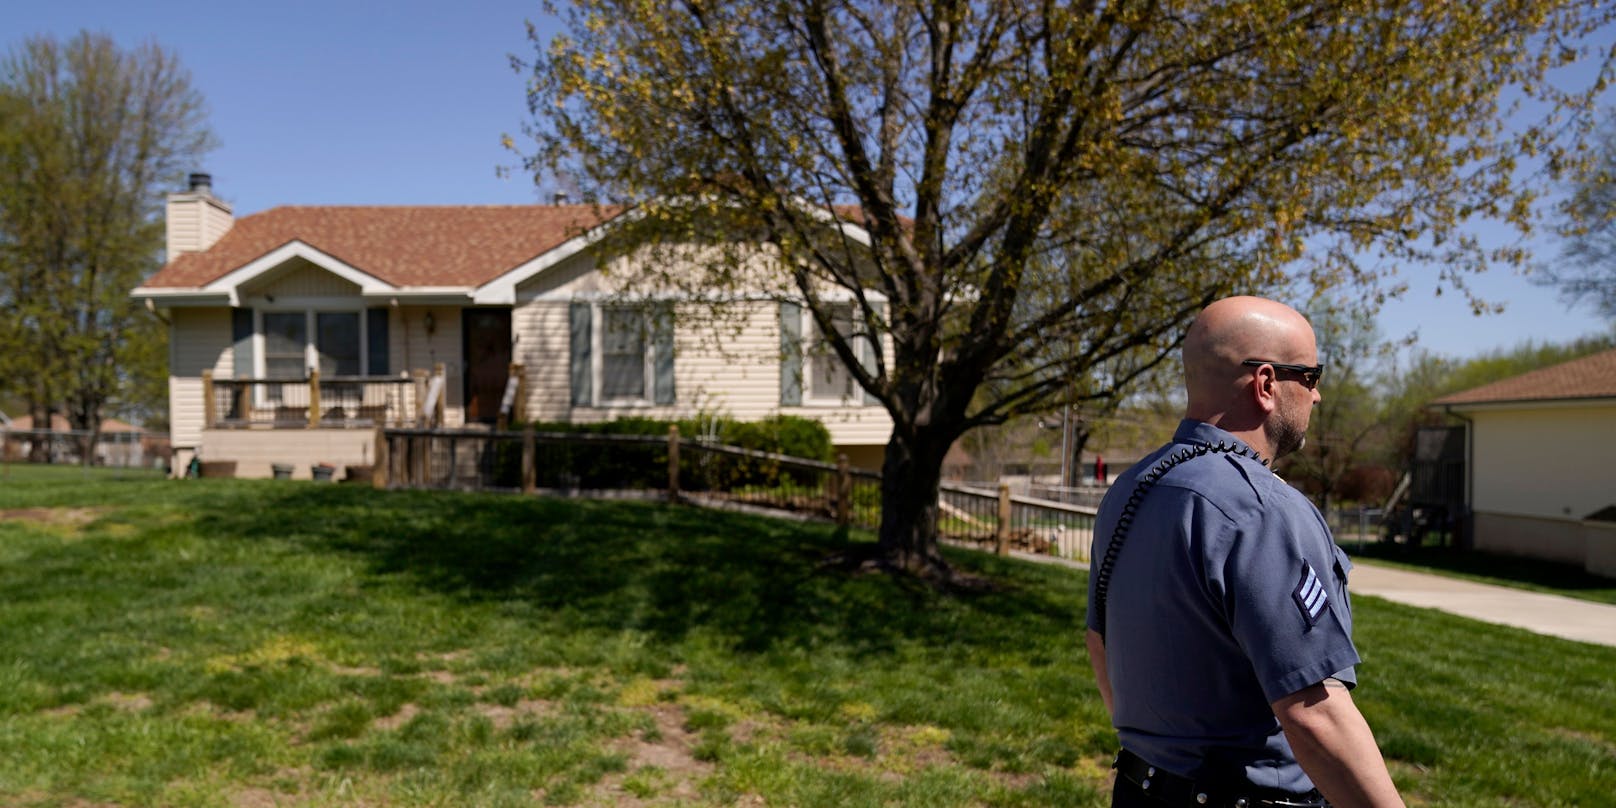 Der 16-Jährige klingelte unabsichtlich an diesem Haus. Daraufhin schoss der Hausbesitzer zwei Mal auf den schwarzen Jugendlichen.